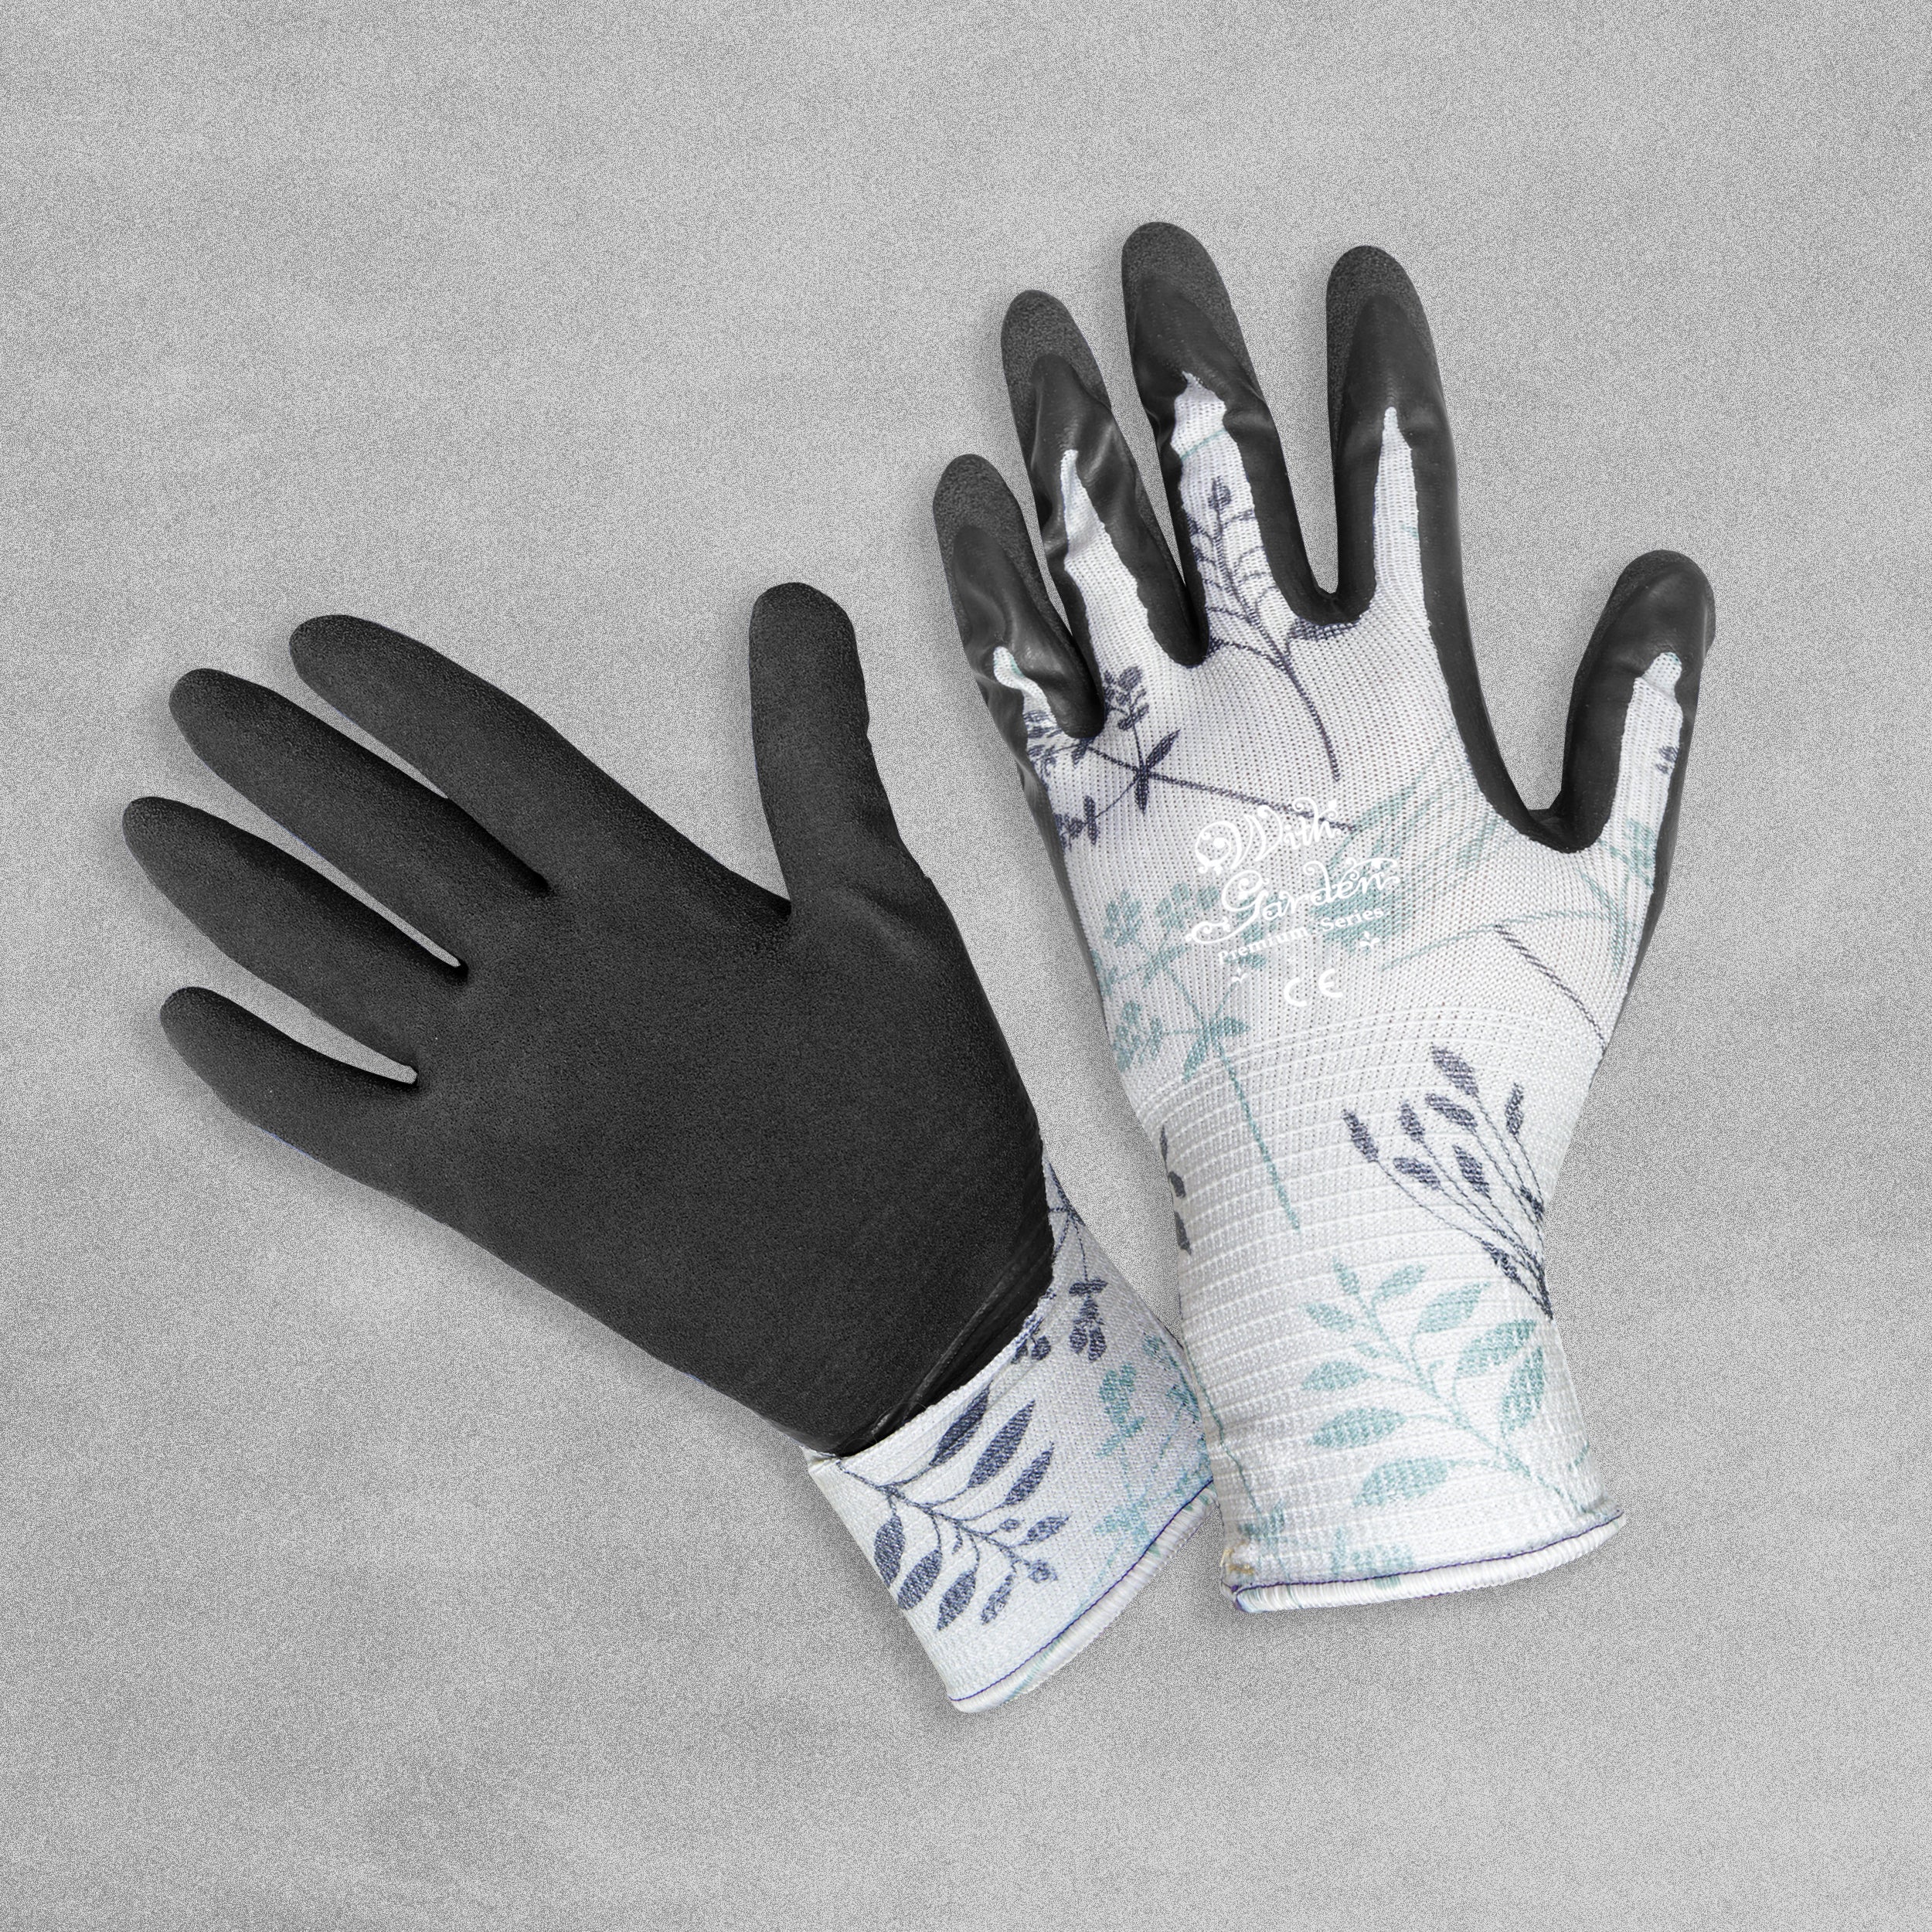 With Garden Premium Luminus Garden gloves - Herb design with black nitrile palm